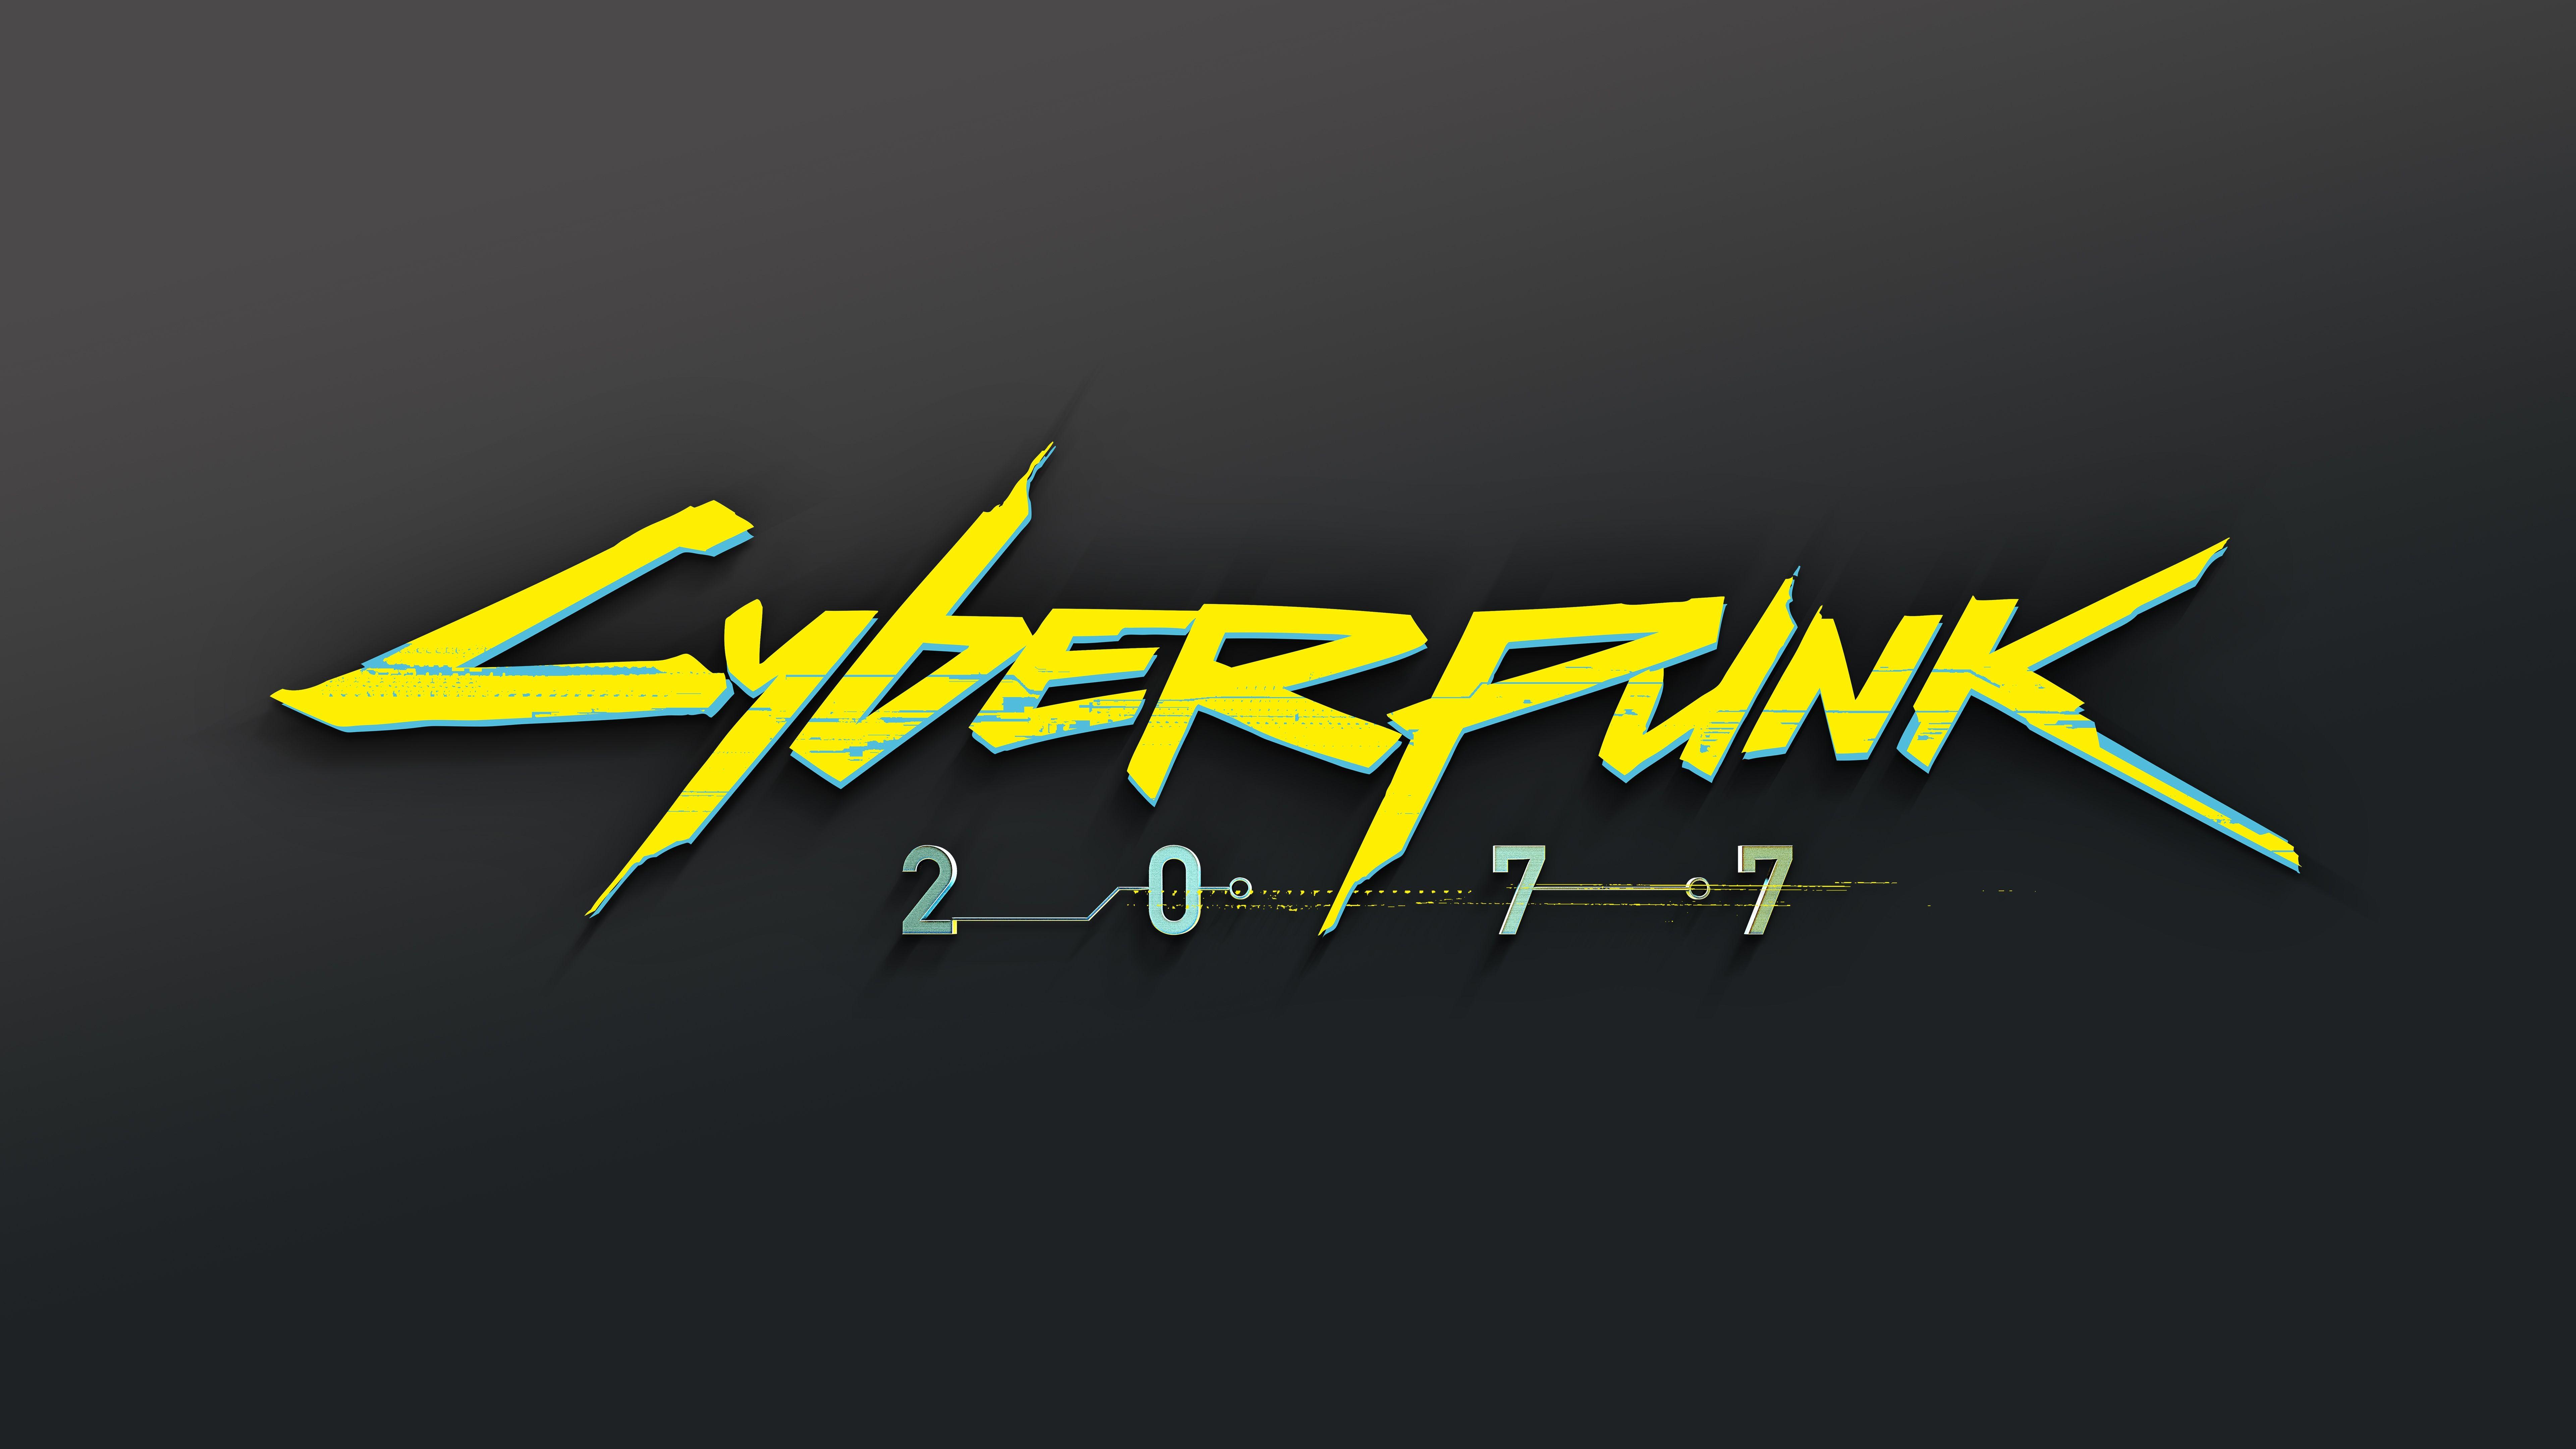 7680 x 4320 · jpeg - Cyberpunk 2077 Logo 8K #22398 | Cyberpunk 2077, Cyberpunk, Logos